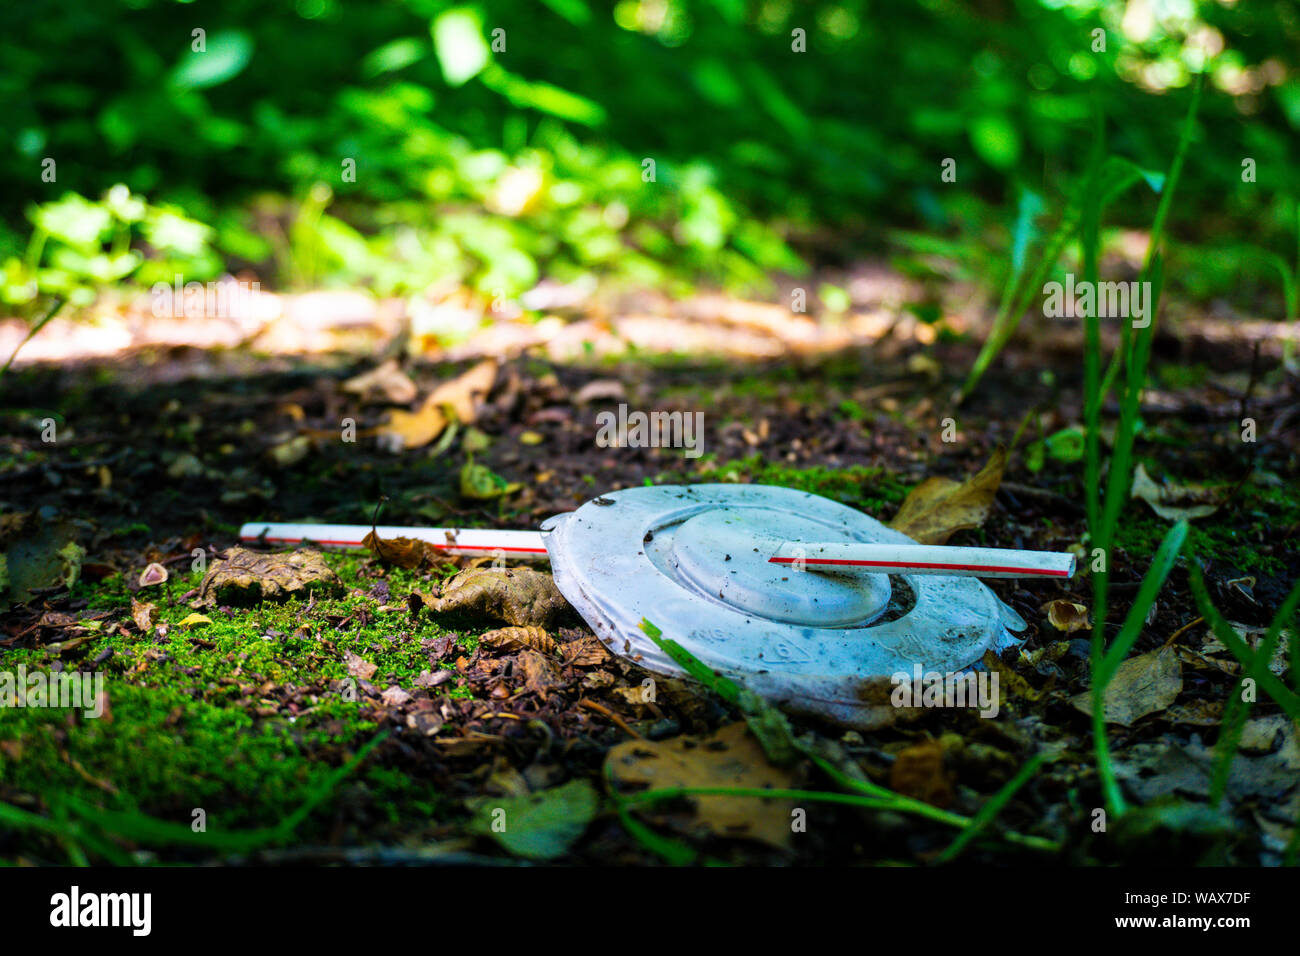 Un coperchio in plastica con paglia si trova al bordo in una zona boscosa, inquinando l'ambiente Foto Stock